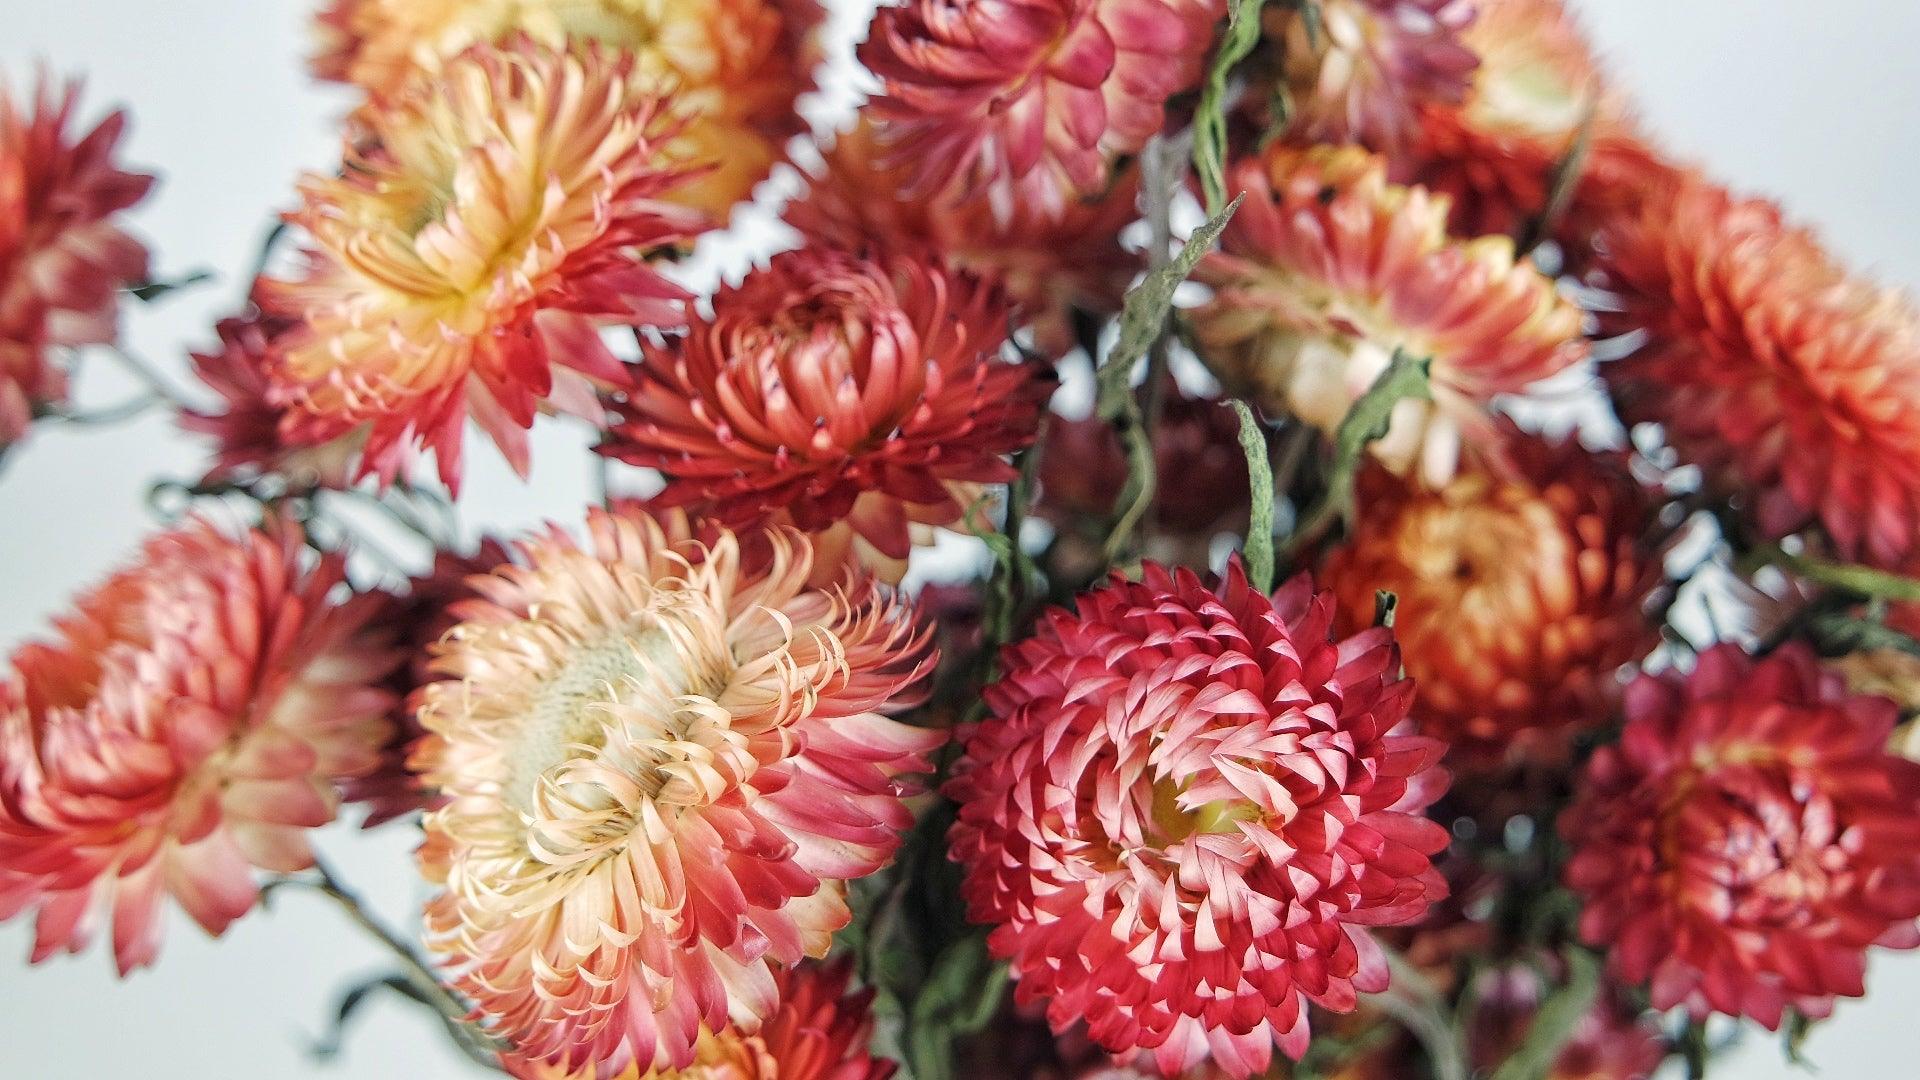 Strawflowers (Helichrysum) - Dark Pink - Dried Flowers - DIY